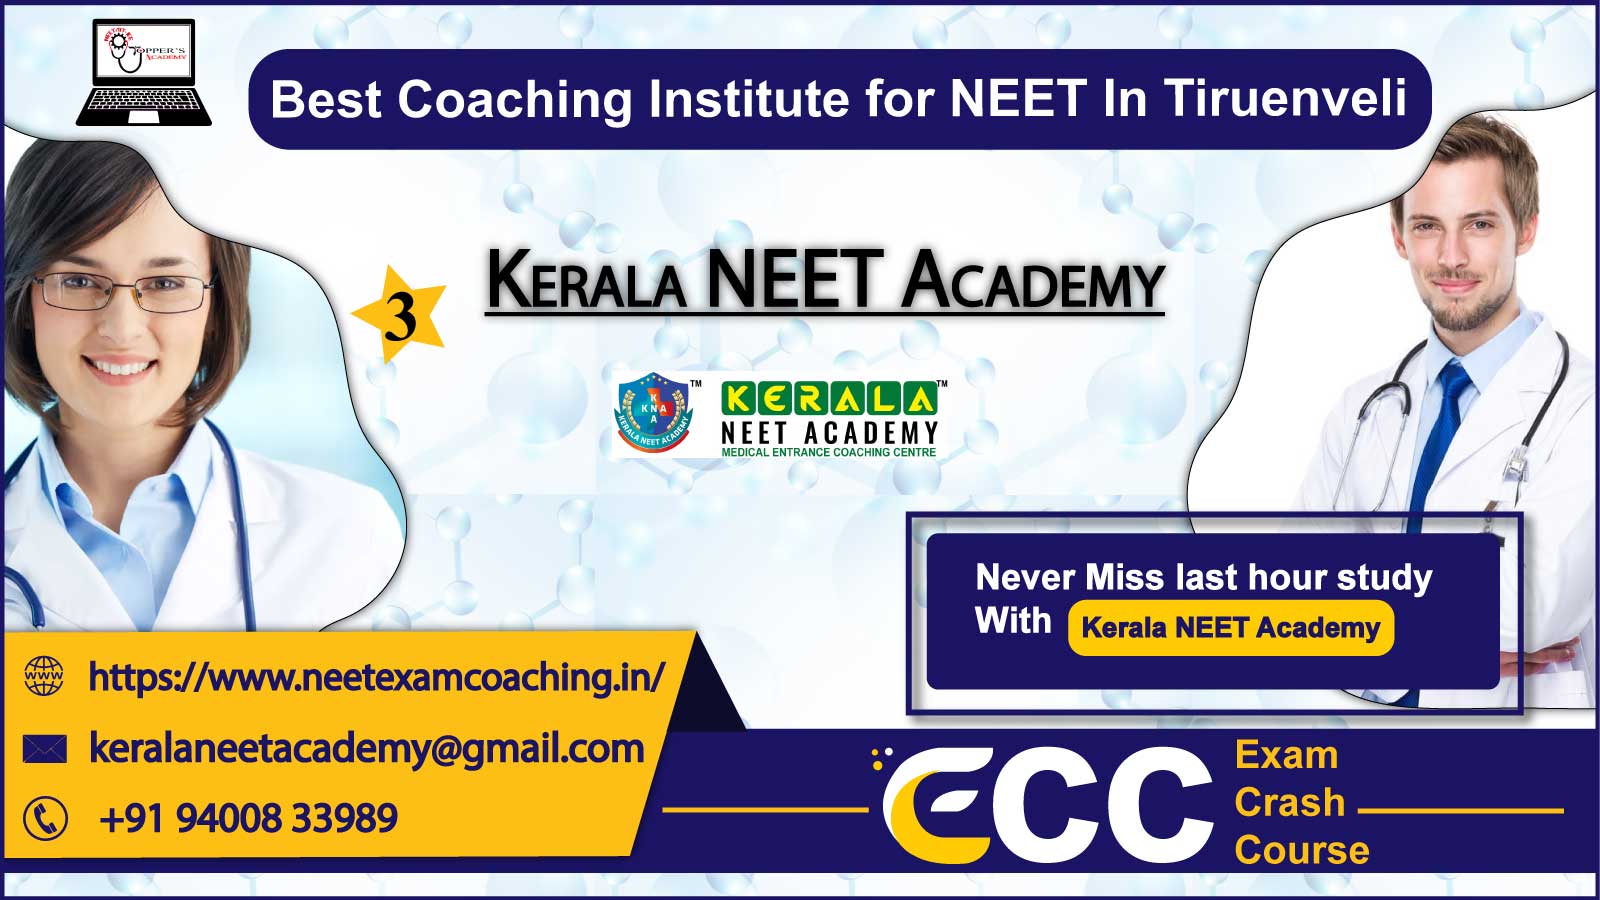 Kerala NEET Academy in Tiruenveli